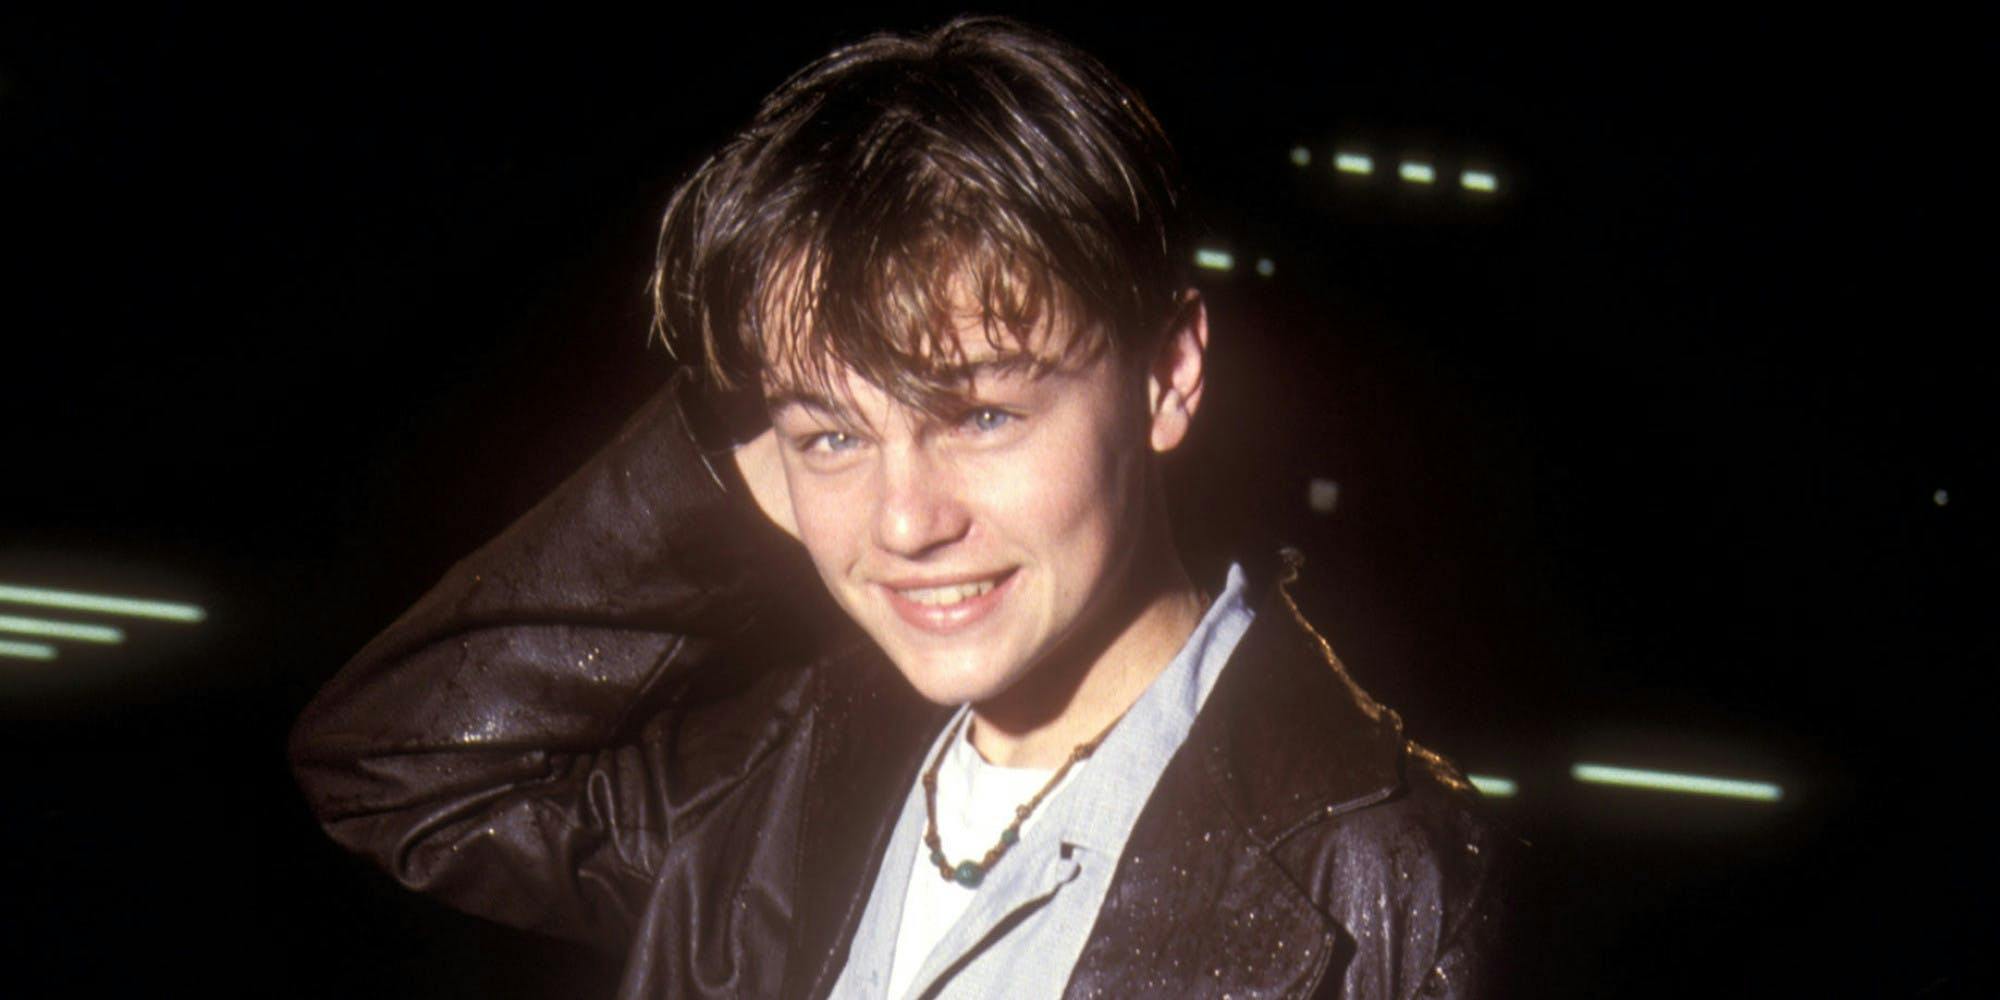 Young Leonardo DiCaprio poses for a photo.